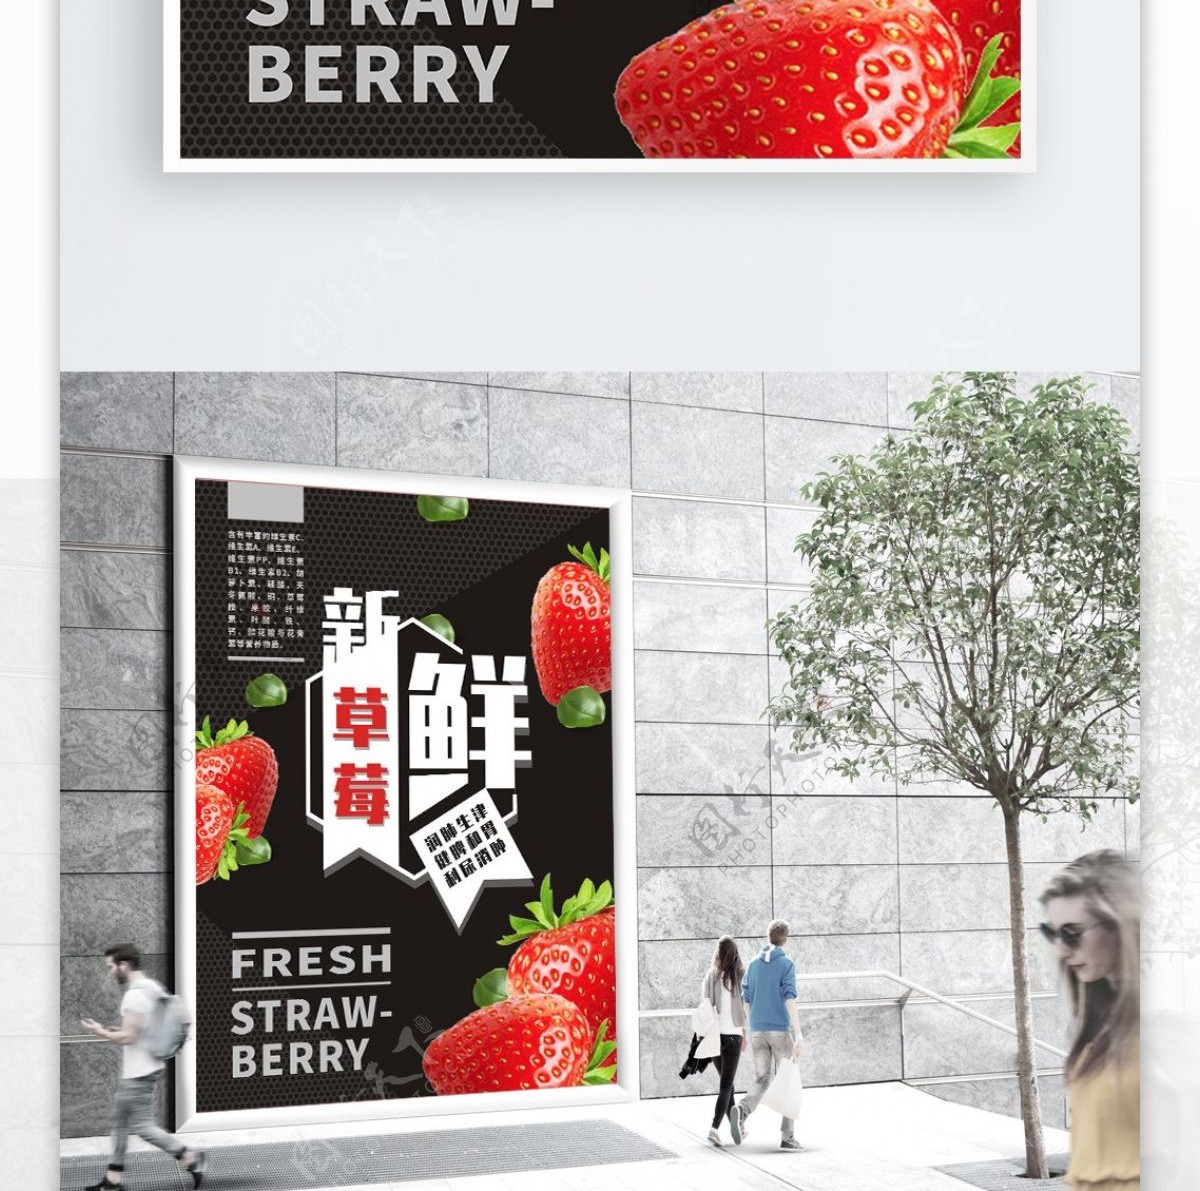 黑色简约风新鲜草莓原创美食海报